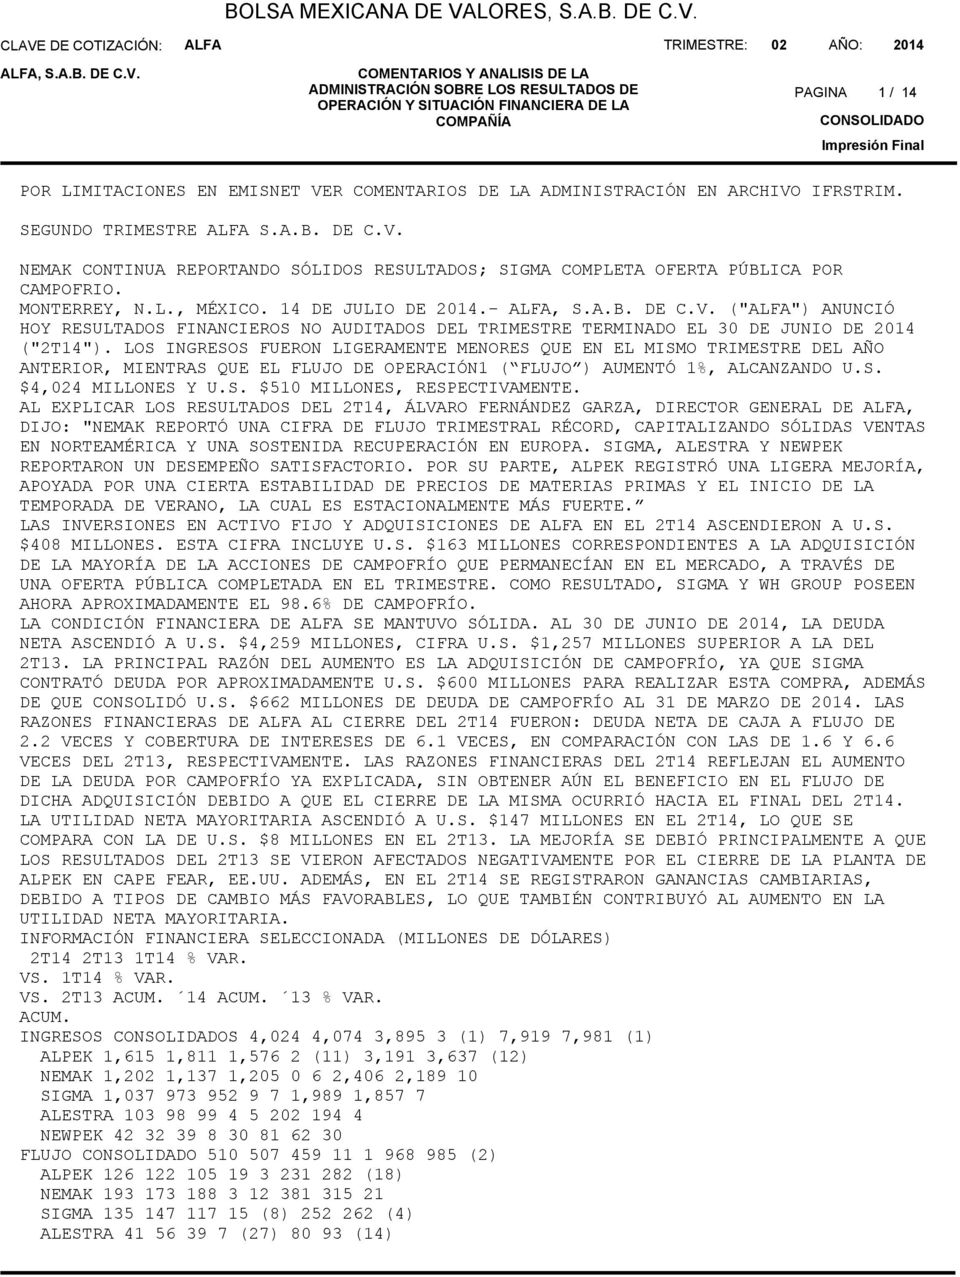 ARCHIVO IFRSTRIM. SEGUNDO TRIMESTRE S.A.B. DE C.V. NEMAK CONTINUA REPORTANDO SÓLIDOS RESULTADOS; SIGMA COMPLETA OFERTA PÚBLICA POR CAMPOFRIO. MONTERREY, N.L., MÉXICO. 14 DE JULIO DE 214.-, S.A.B. DE C.V. ("") ANUNCIÓ HOY RESULTADOS FINANCIEROS NO AUDITADOS DEL TRIMESTRE TERMINADO EL 3 DE JUNIO DE 214 ("2T14").